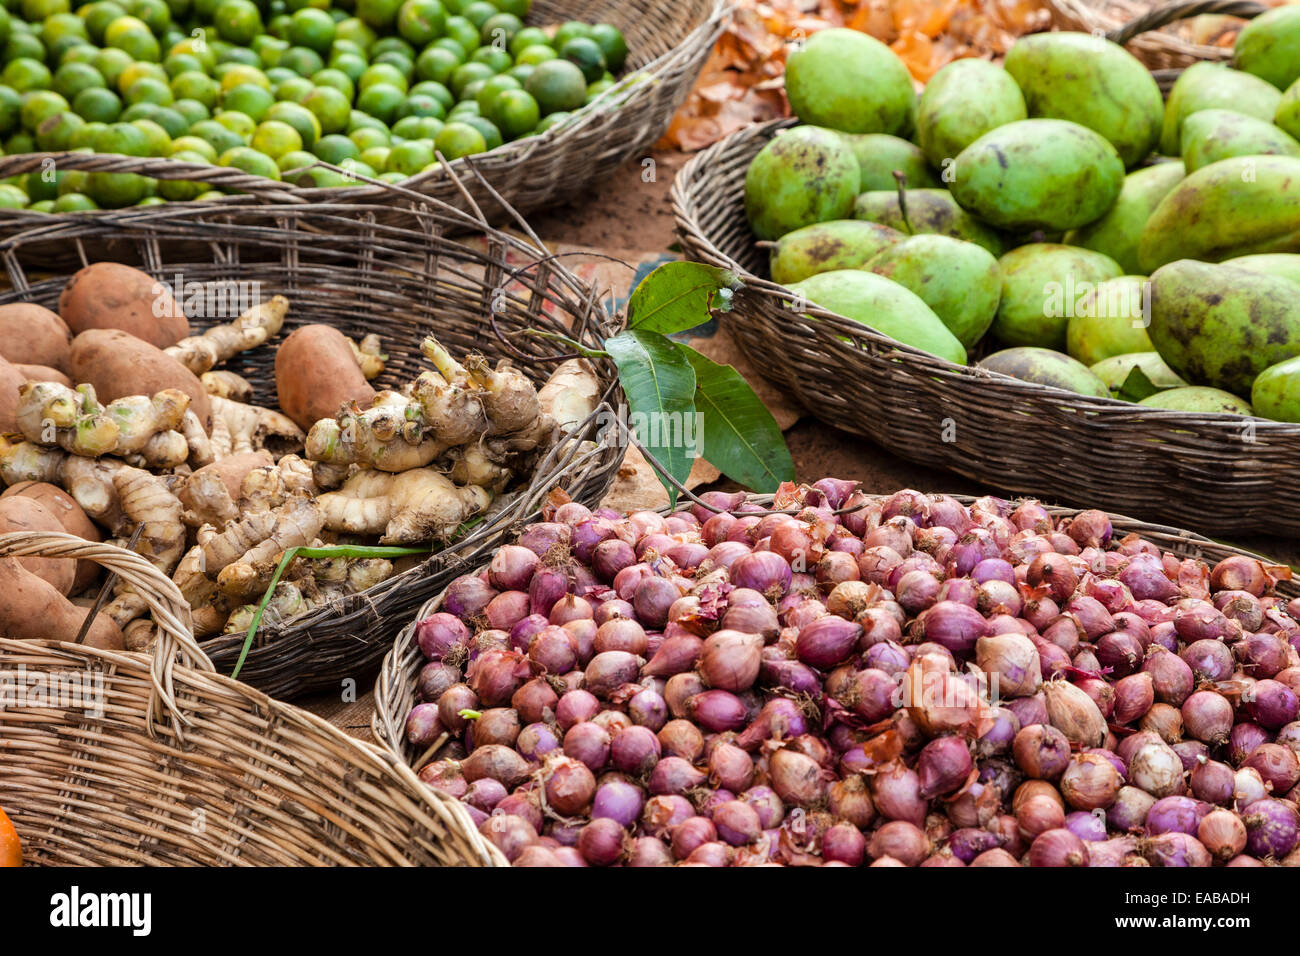 Kambodscha.  Ingwer, Zwiebeln, Limonen und Mangos zum Verkauf auf Markt in der Nähe von Siem Reap. Stockfoto